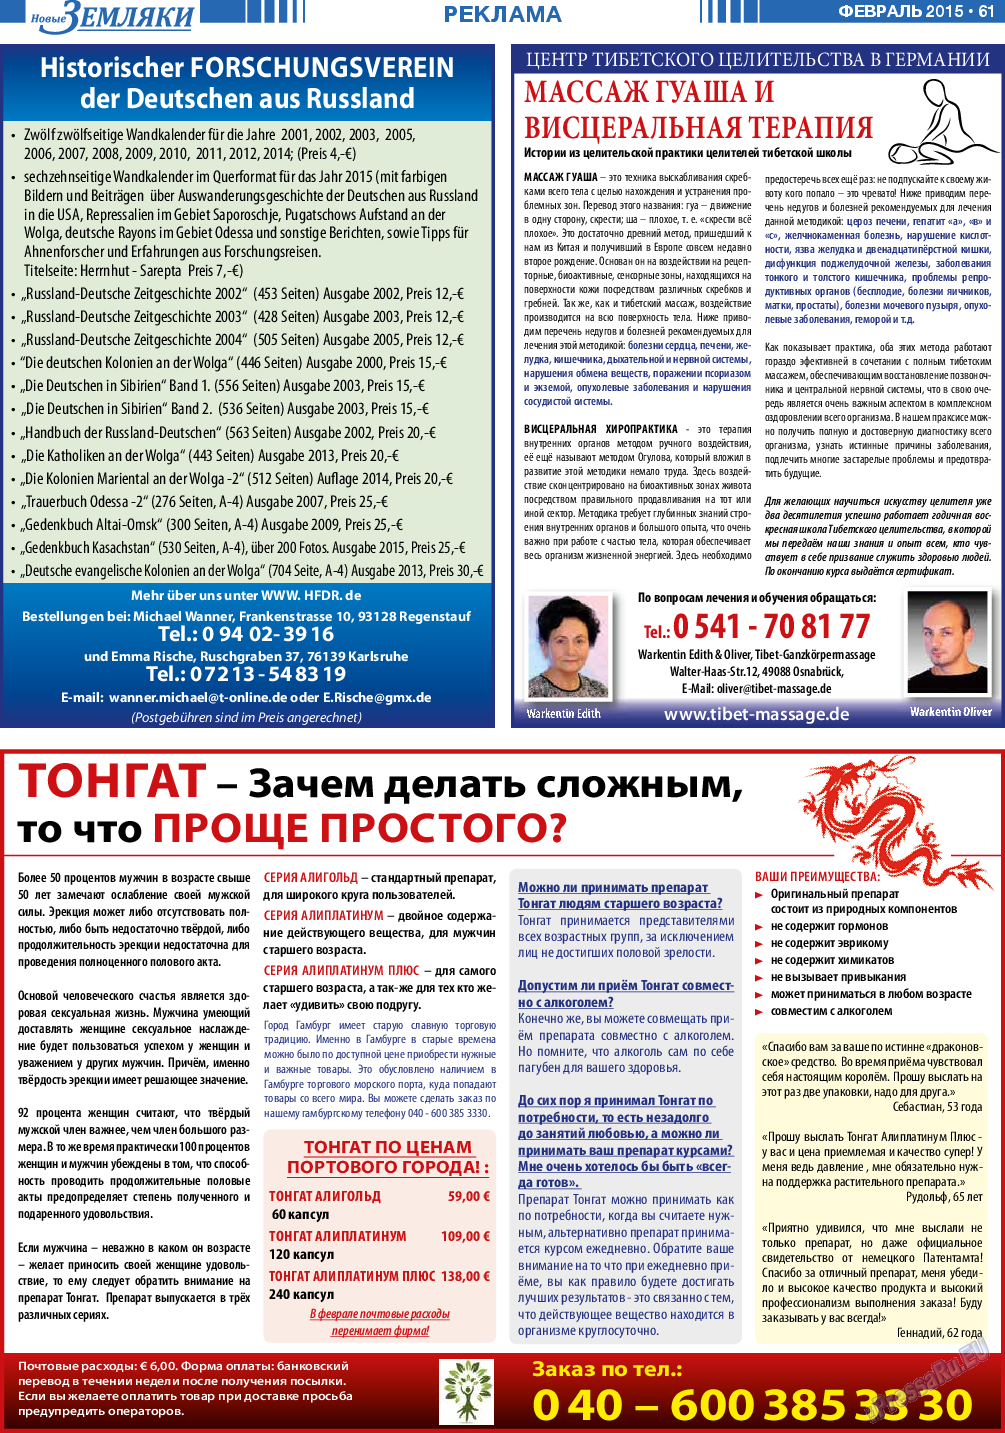 Новые Земляки, газета. 2015 №2 стр.61